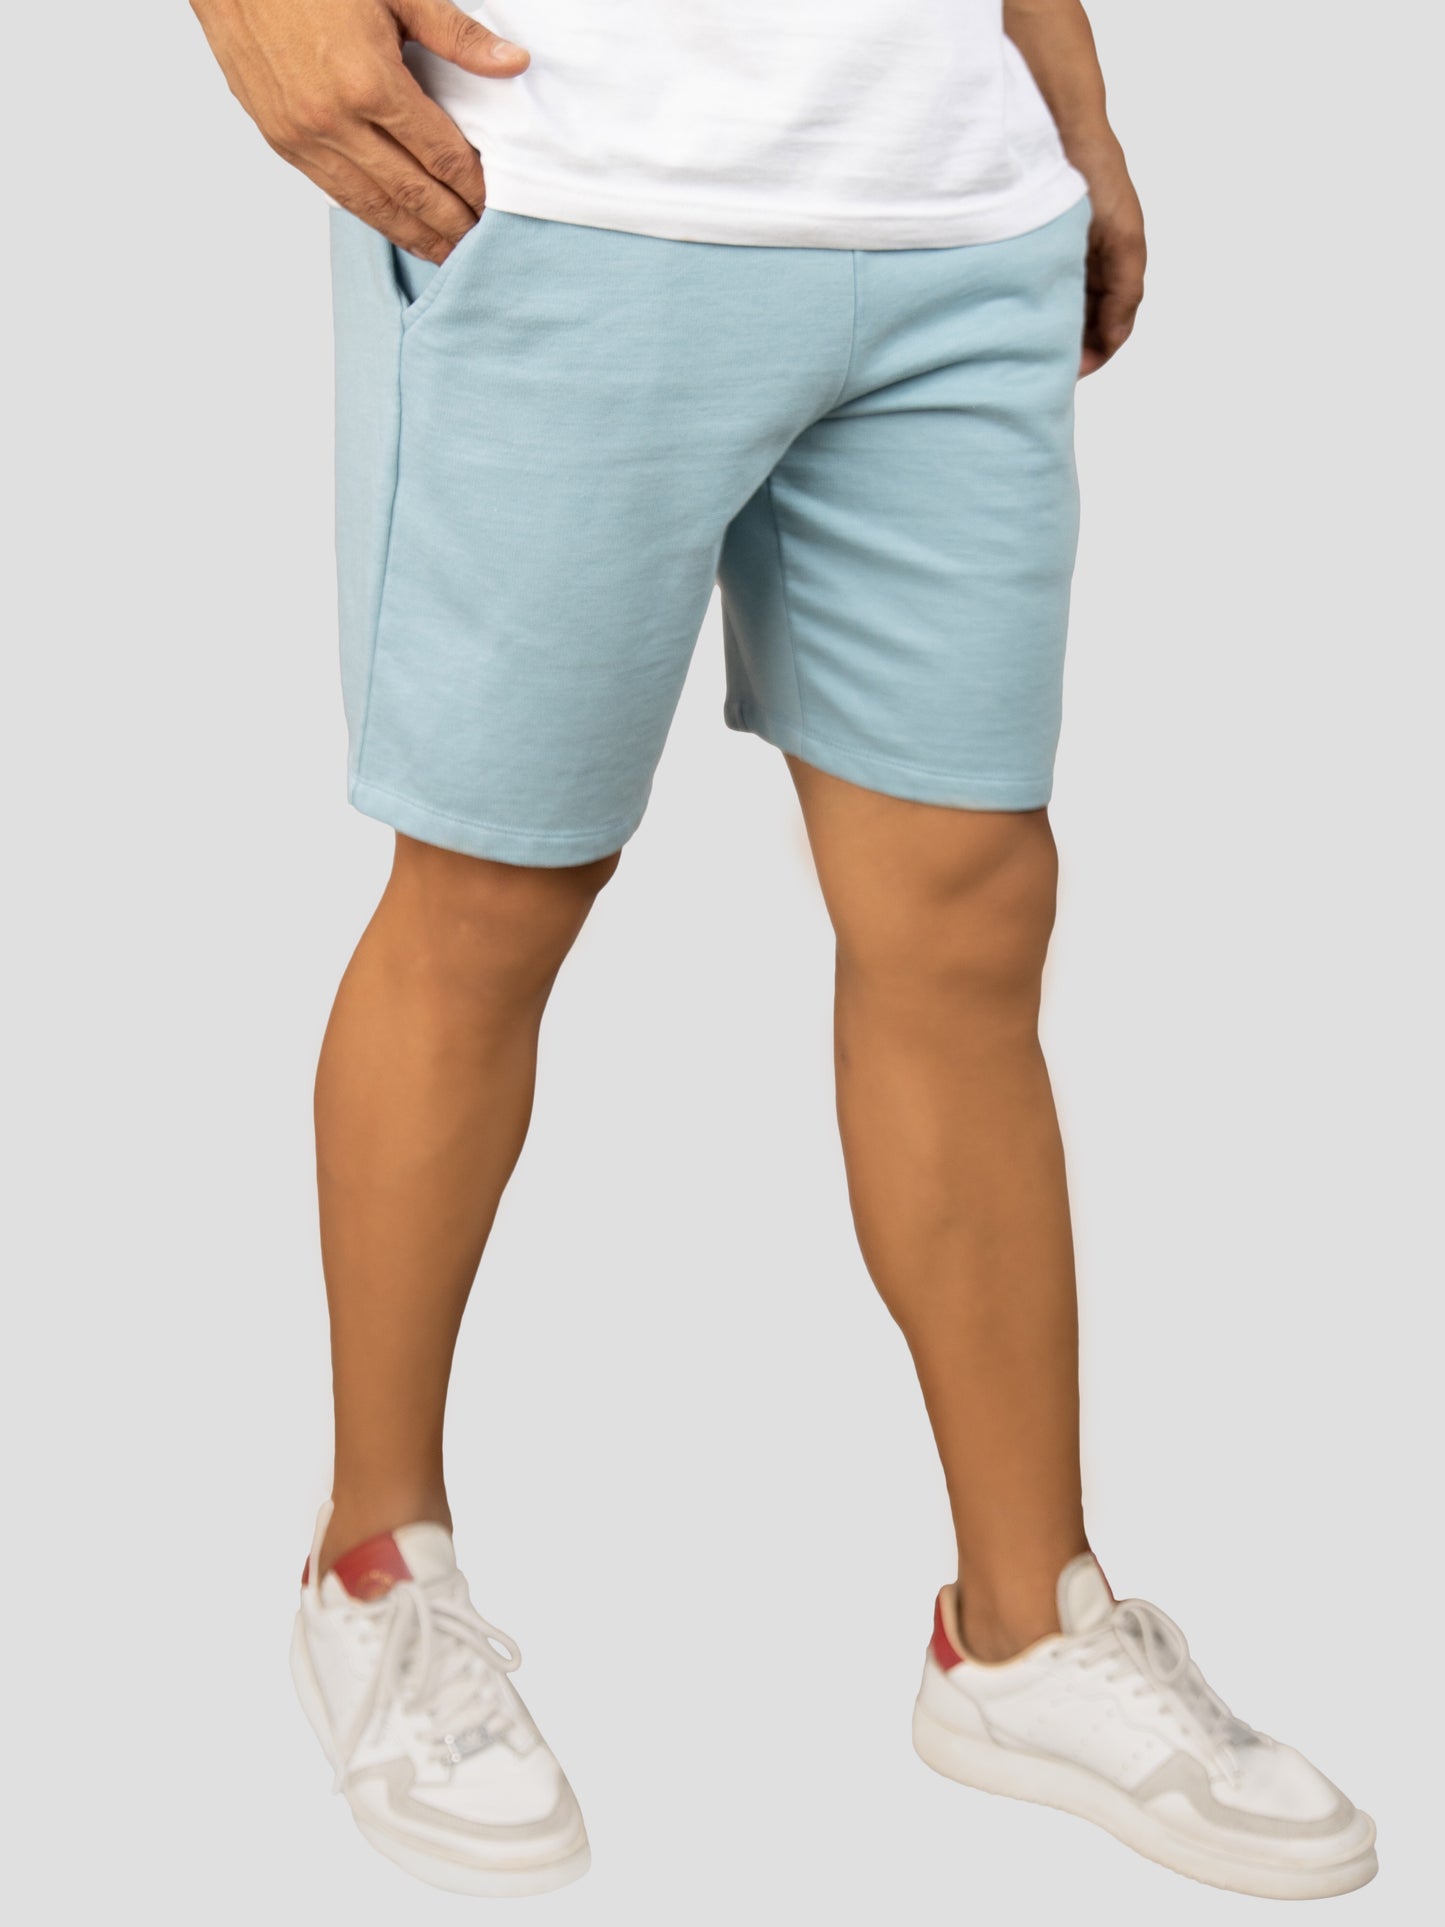 Blue casual cotton fleece shorts for men